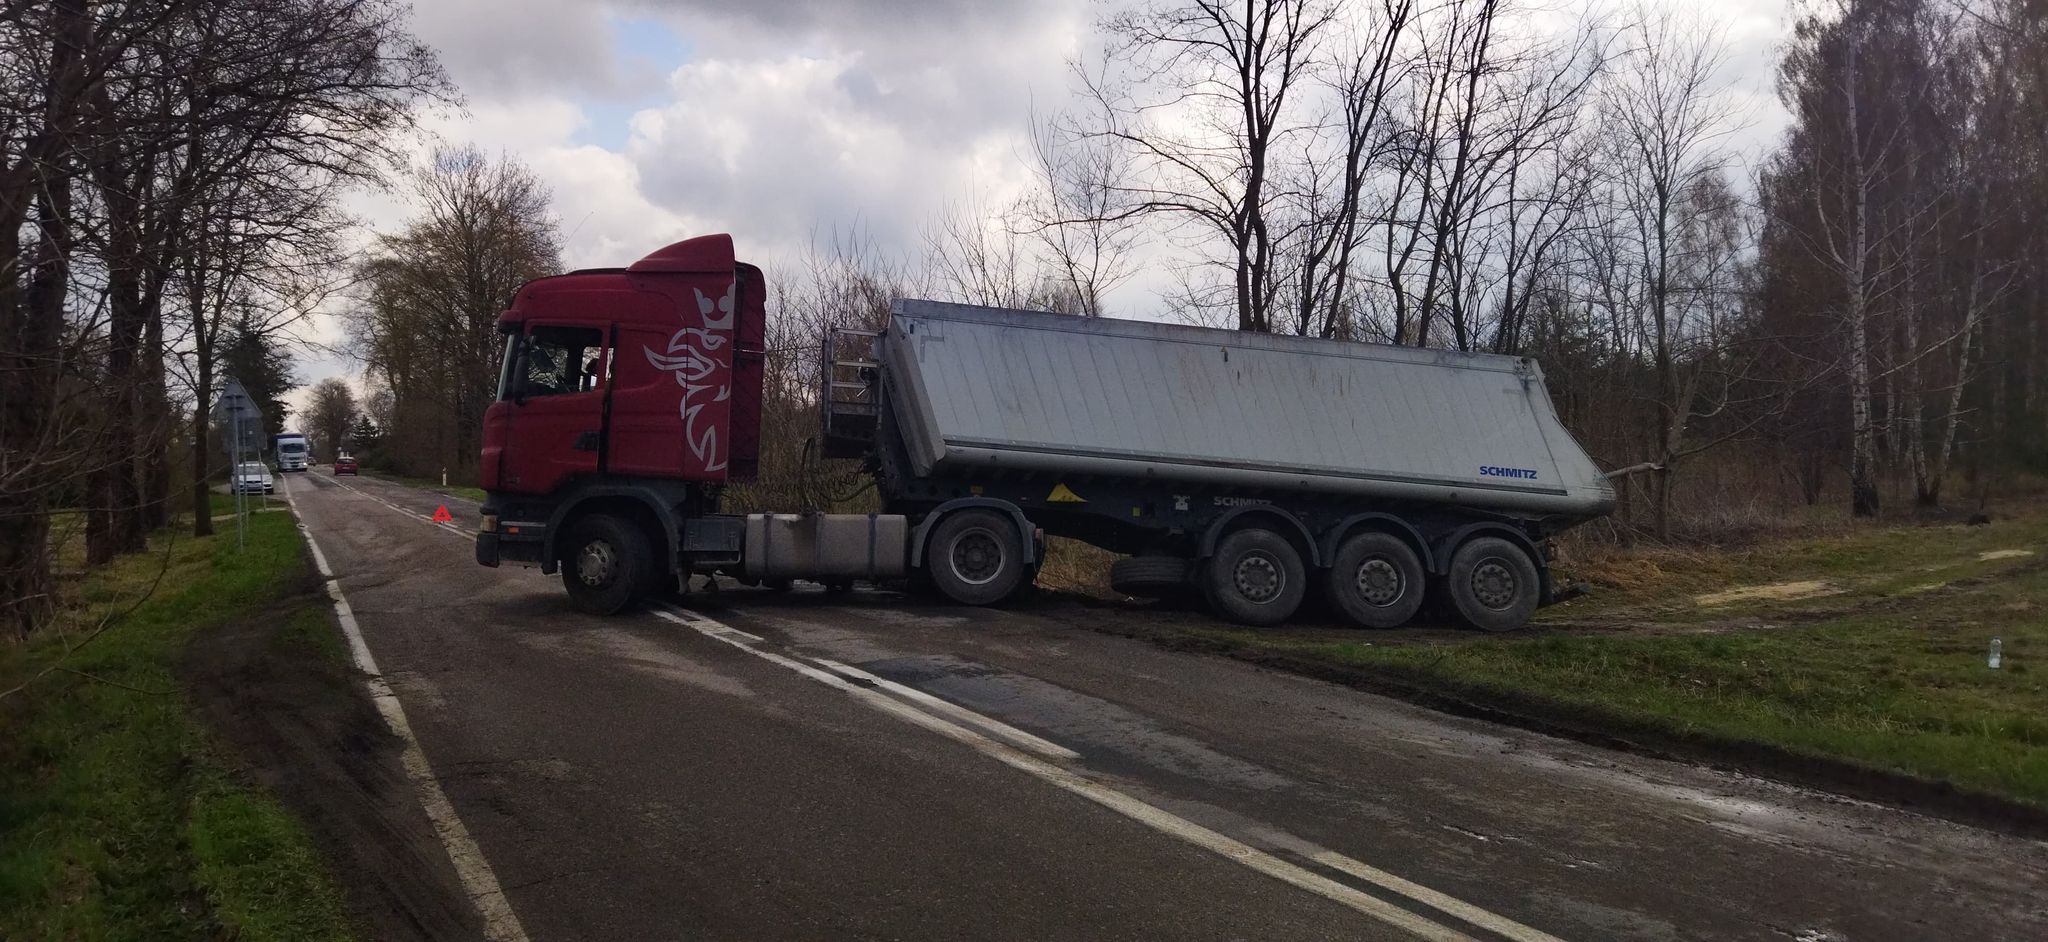 Pojazd ciężarowy blokuje częściowo drogę wojewódzką. Przejazd tylko dla osobówek (zdjęcia)